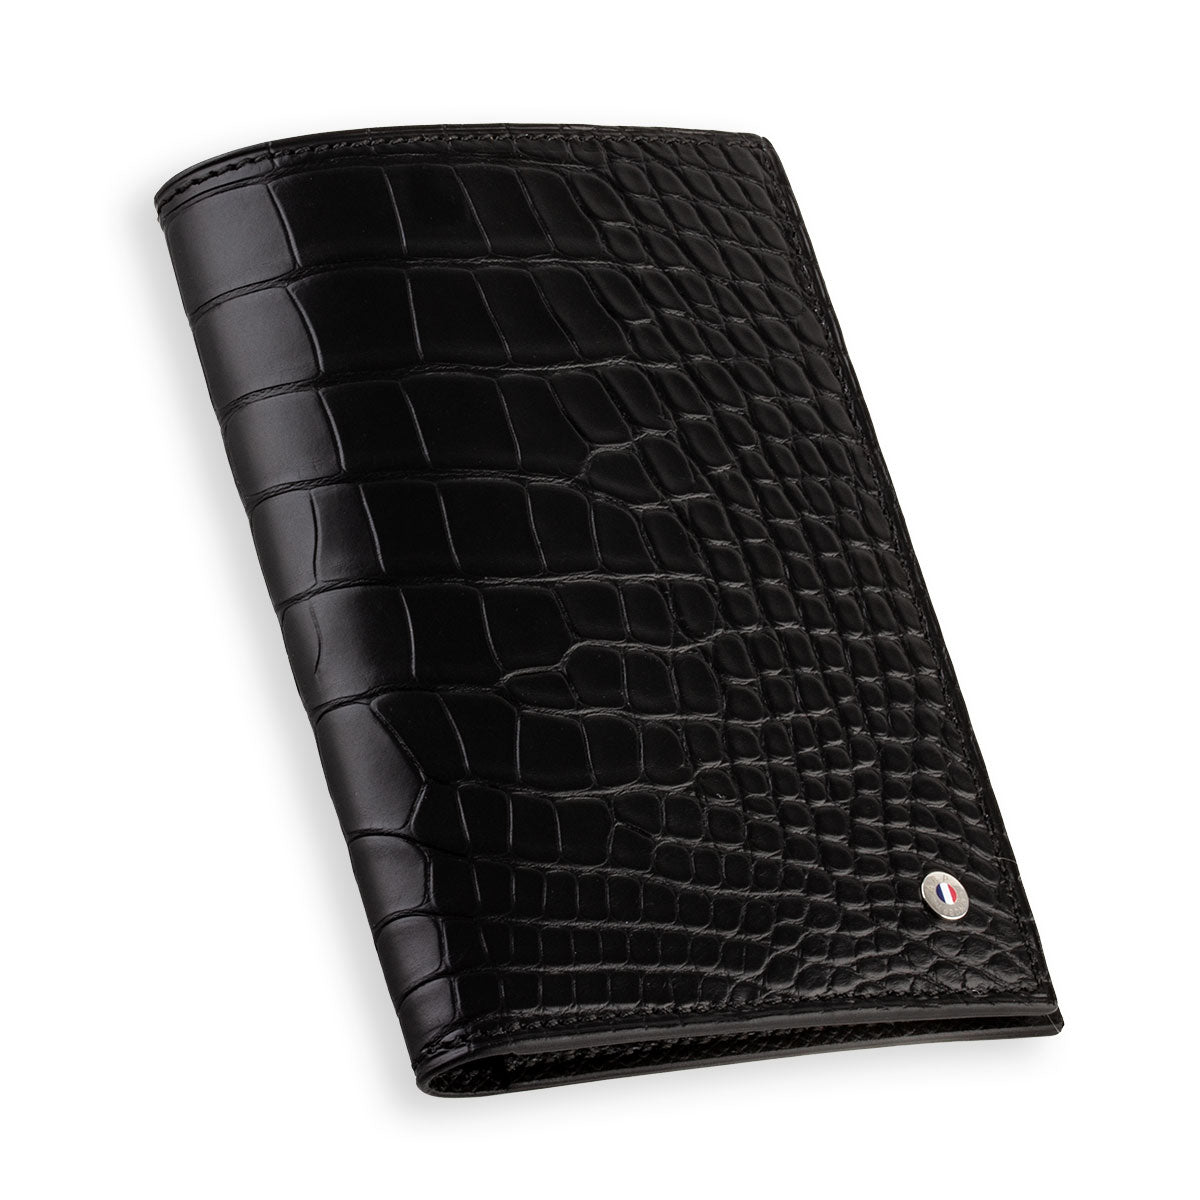 Leather Passport Holder "Essential" - Genuine alligator (black, blue, green, brown, orange...)